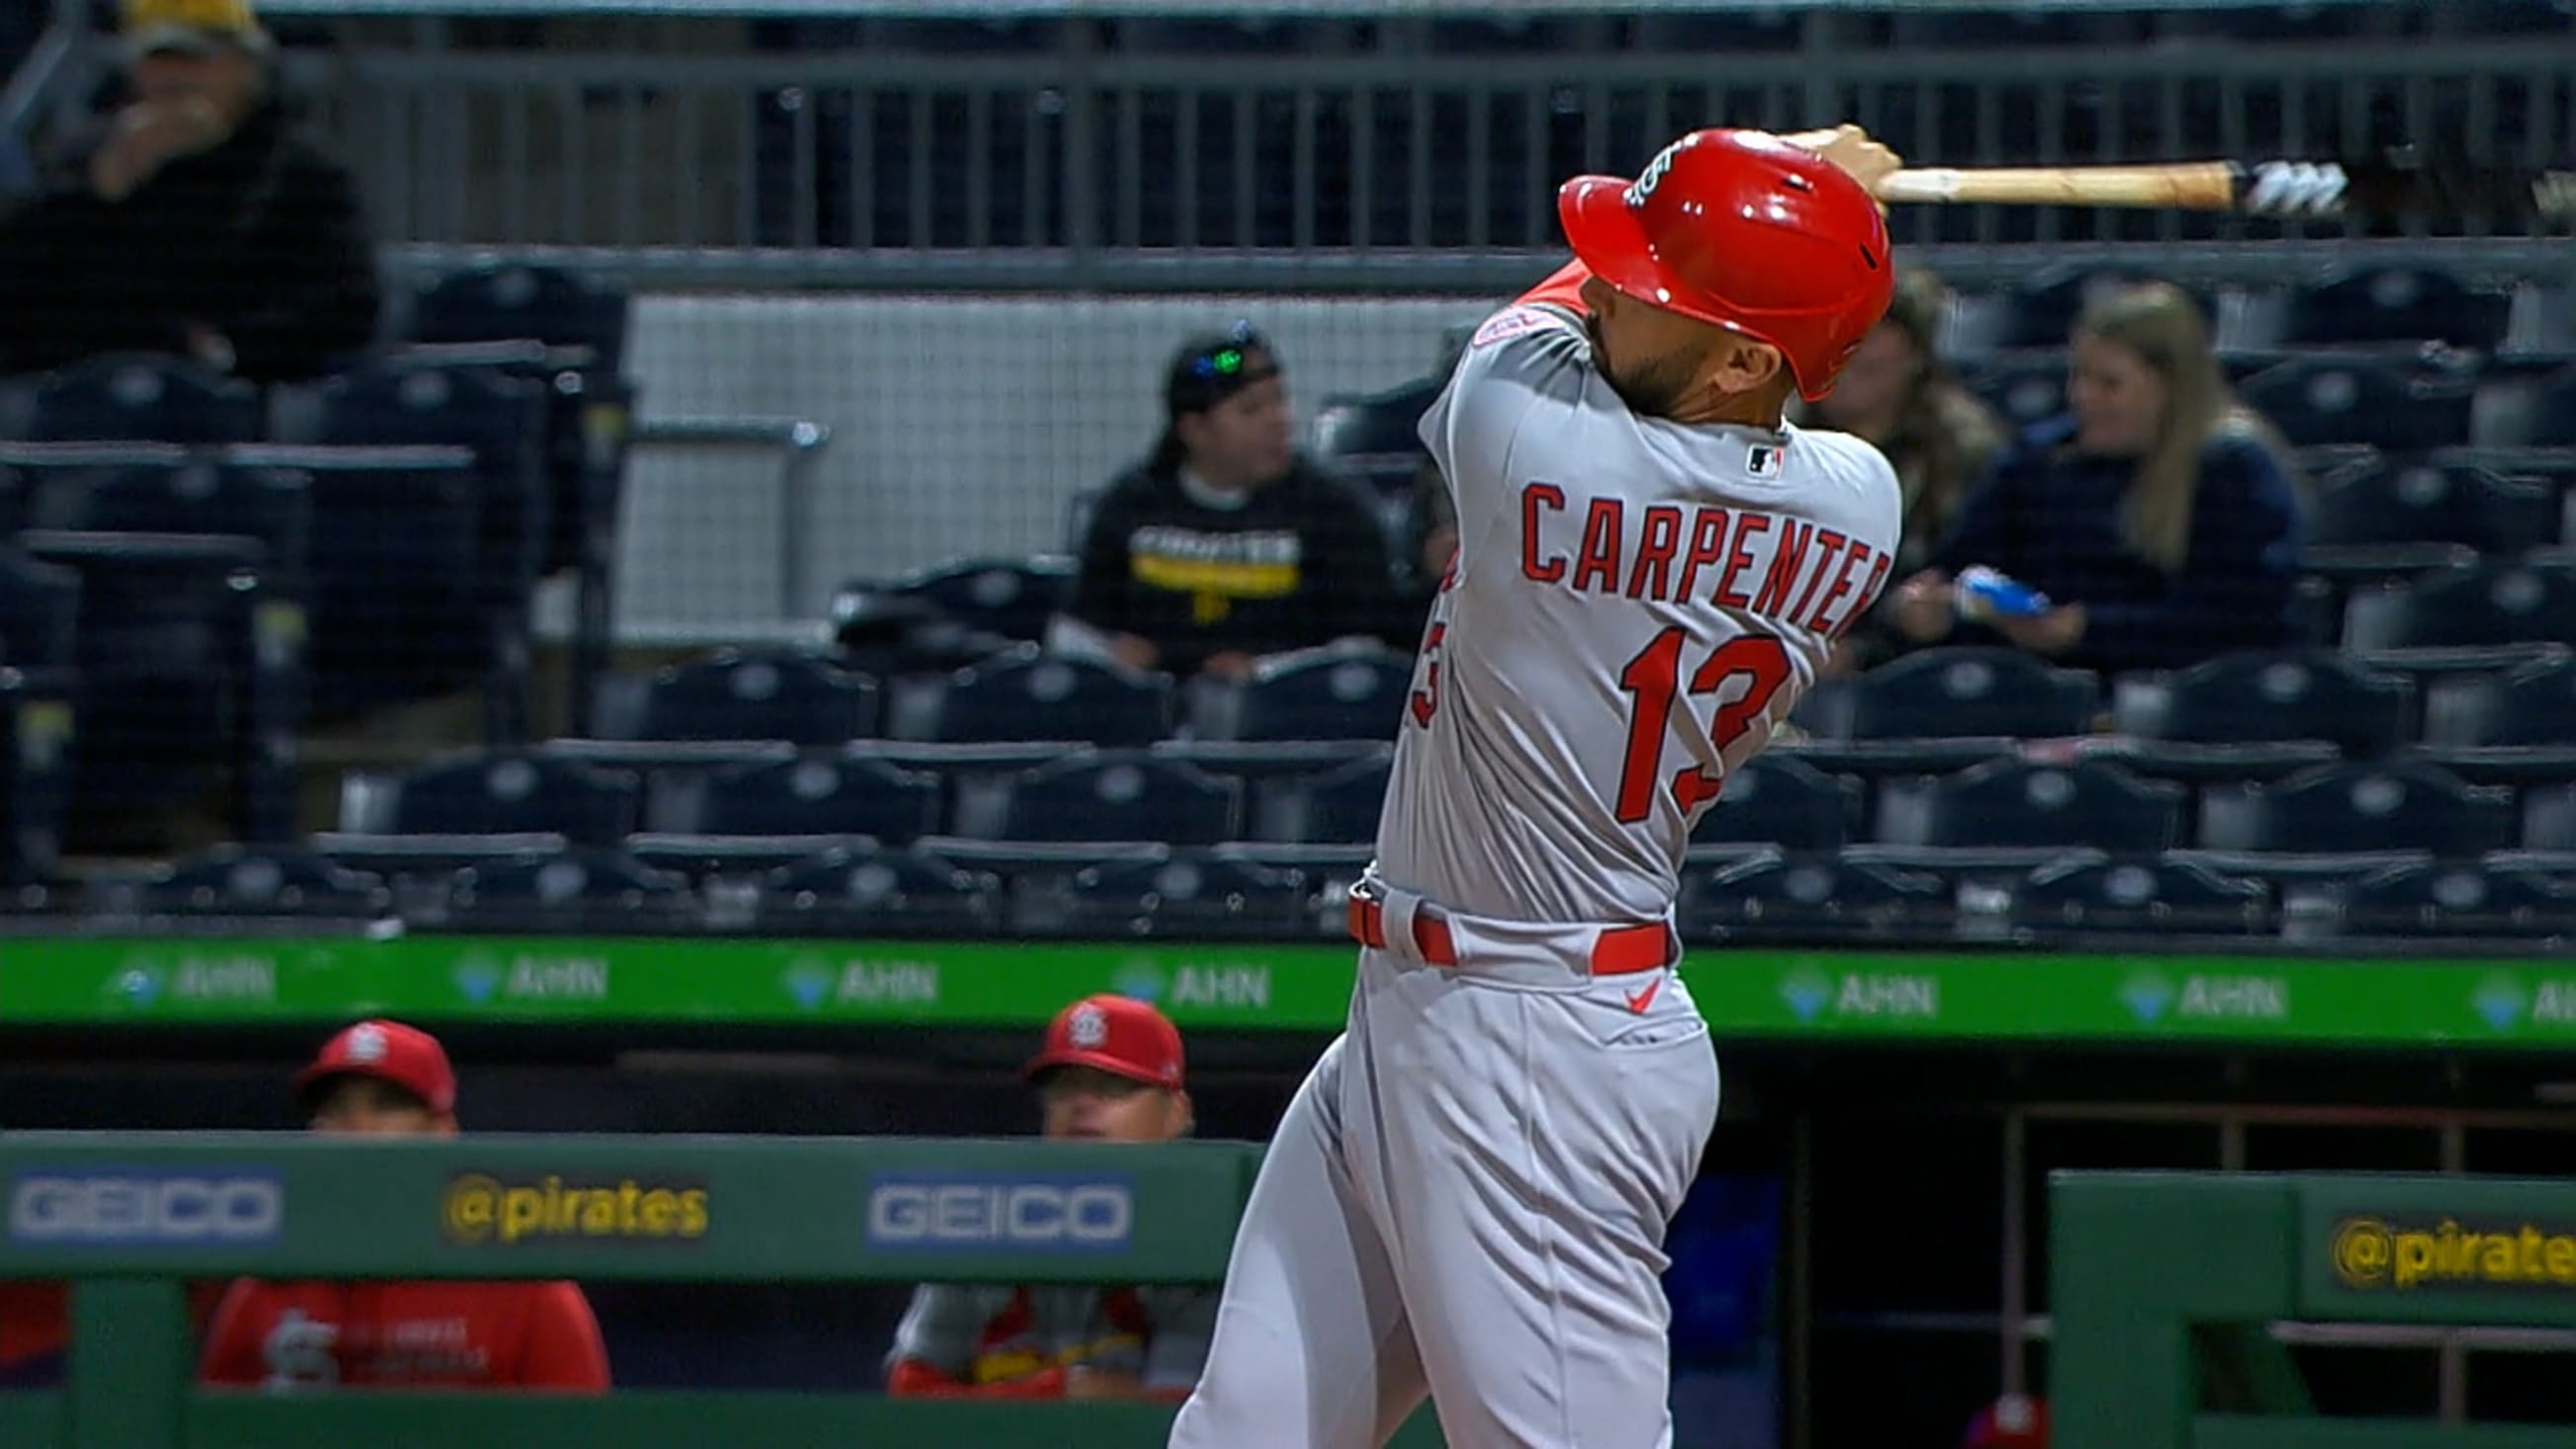 St. Louis Cardinals' Matt Carpenter celebrates after hitting a